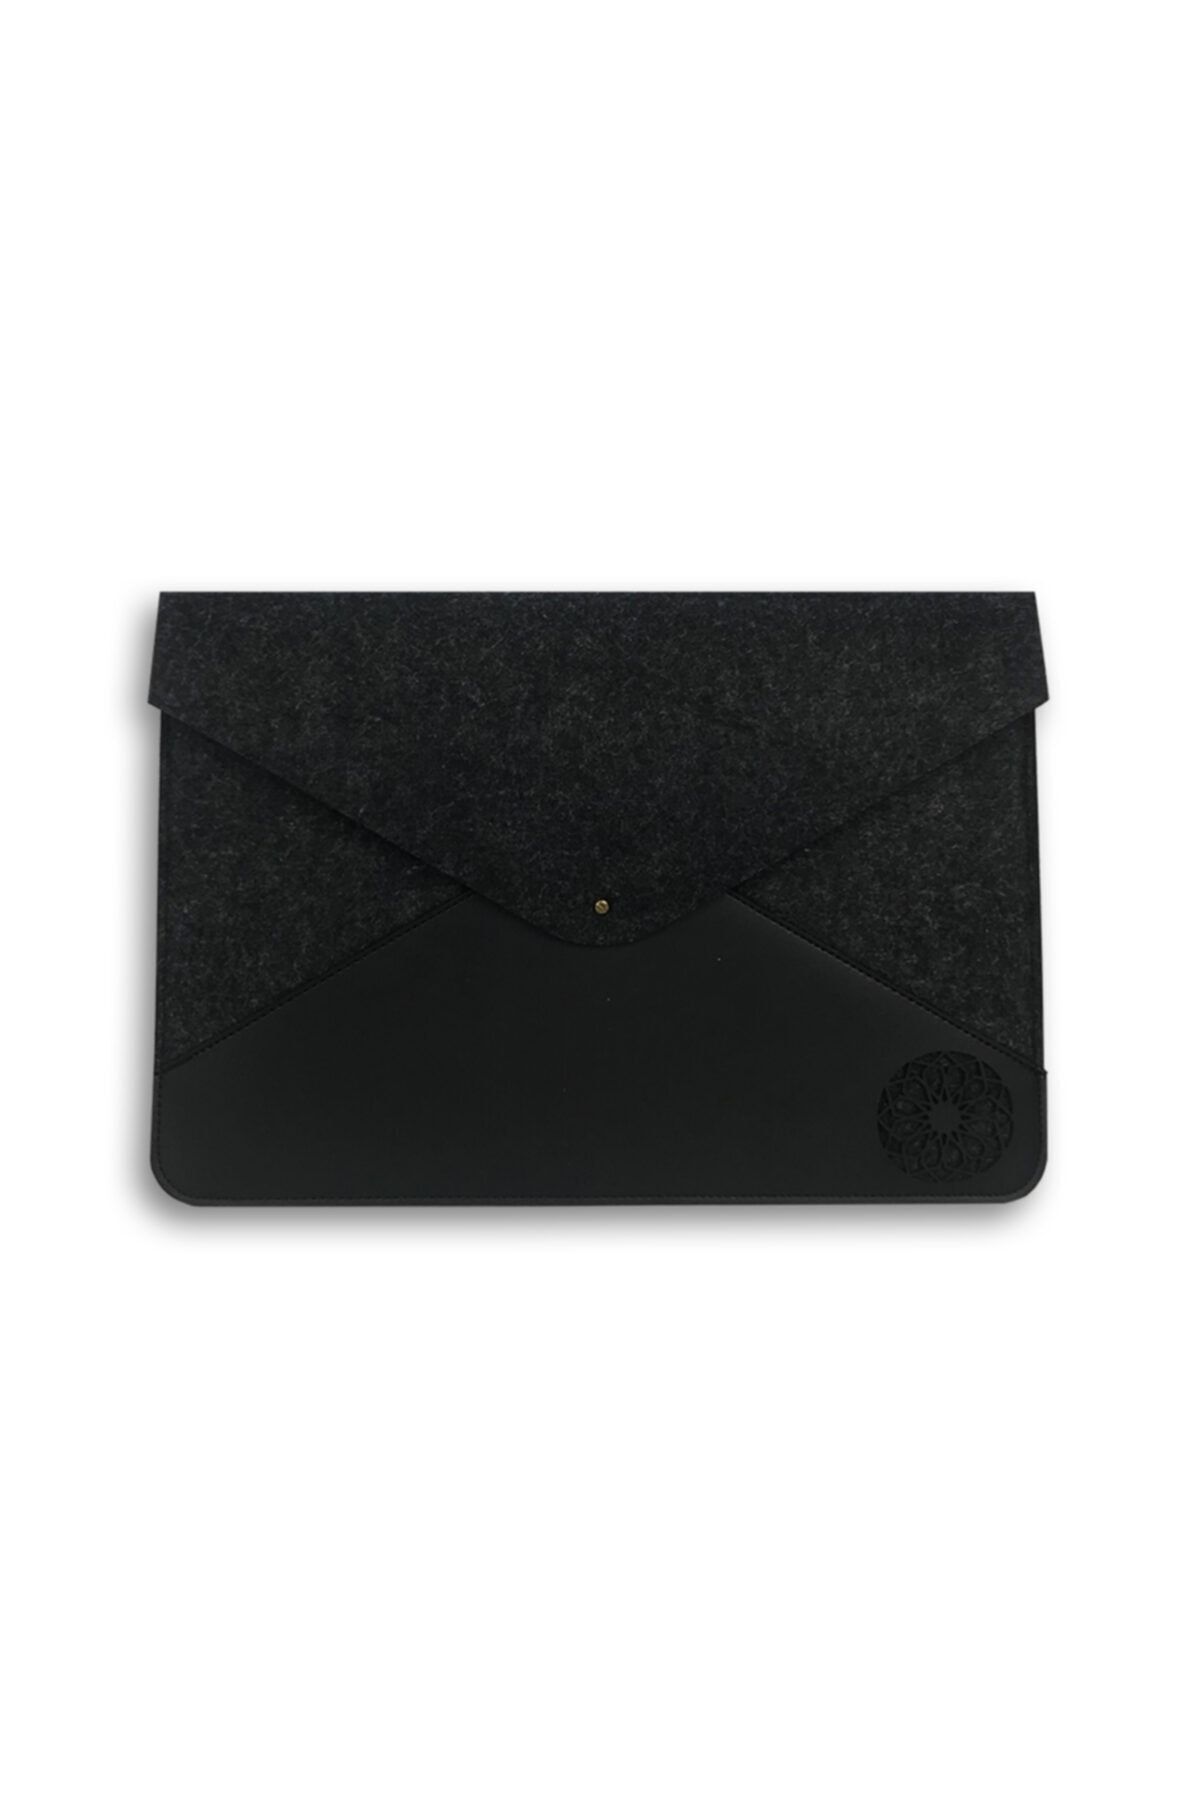 misingpiece Kişiye Özel Kutusunda Mandala Desenli Keçe 13 Inç Apple Macbook Kılıfı Ve Evraklık Siyah